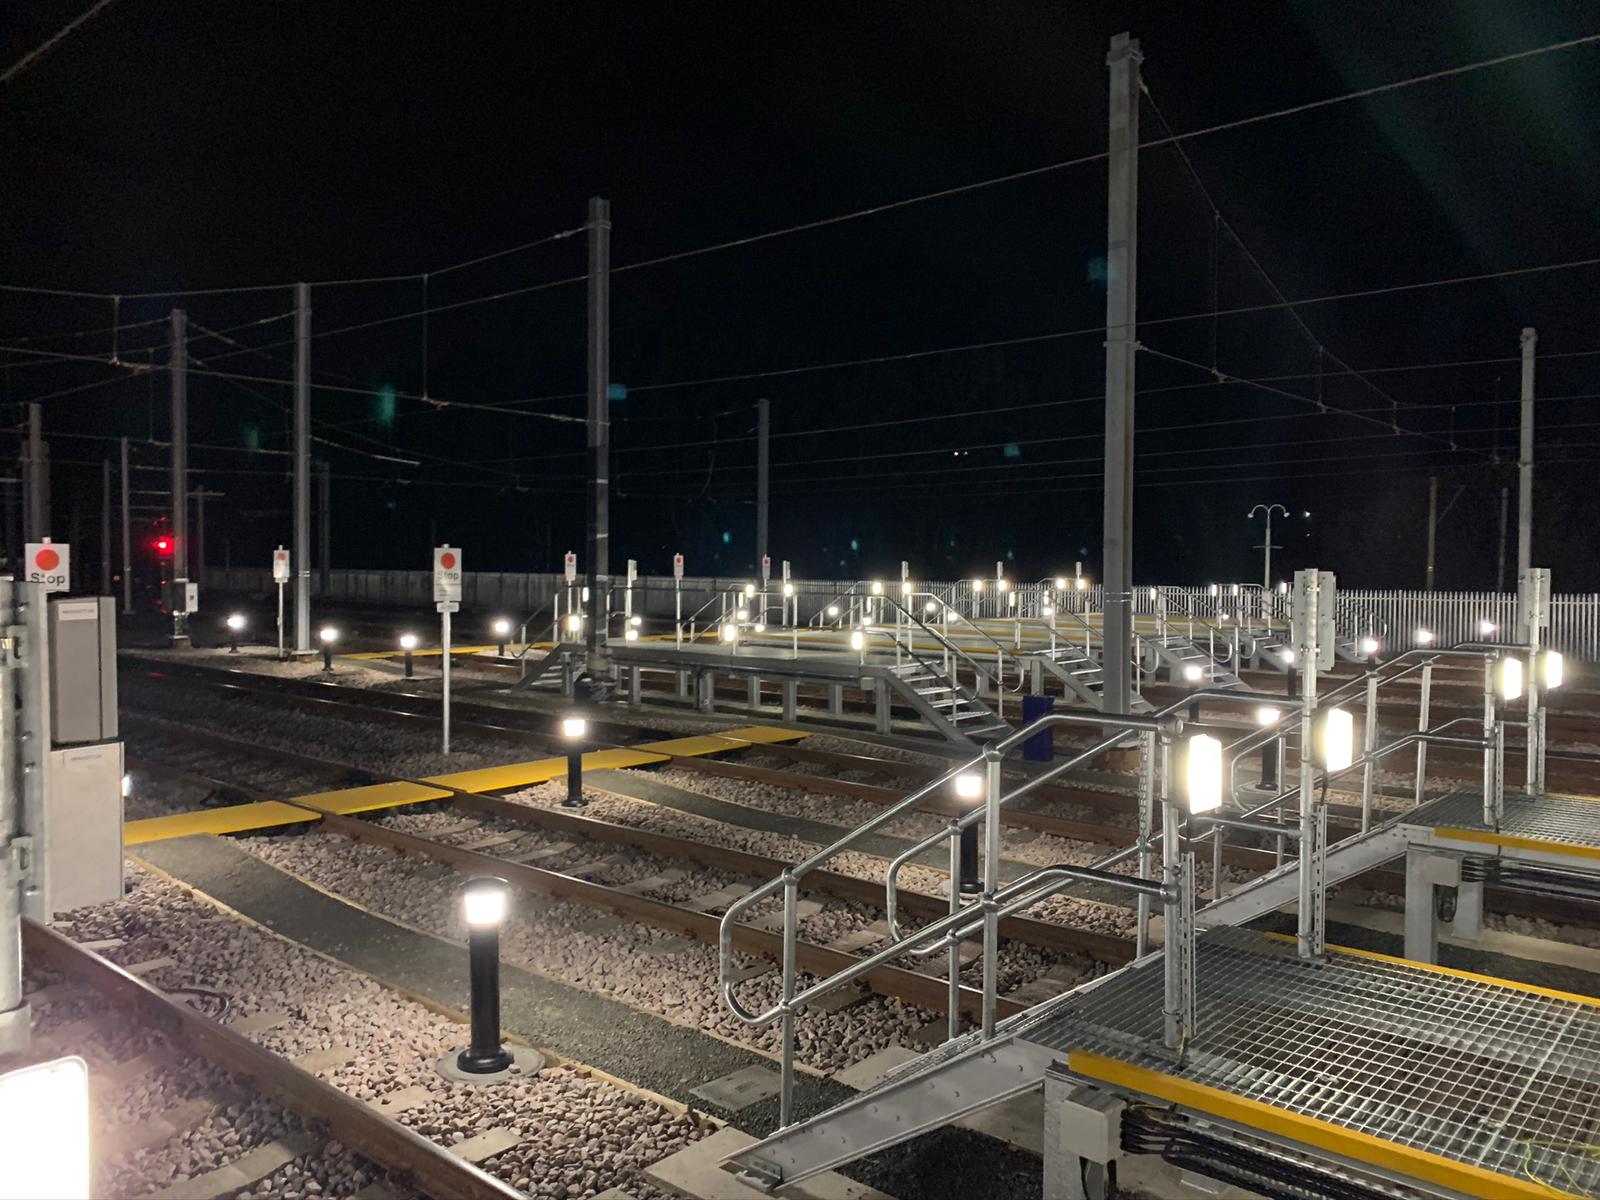 Rail depot night